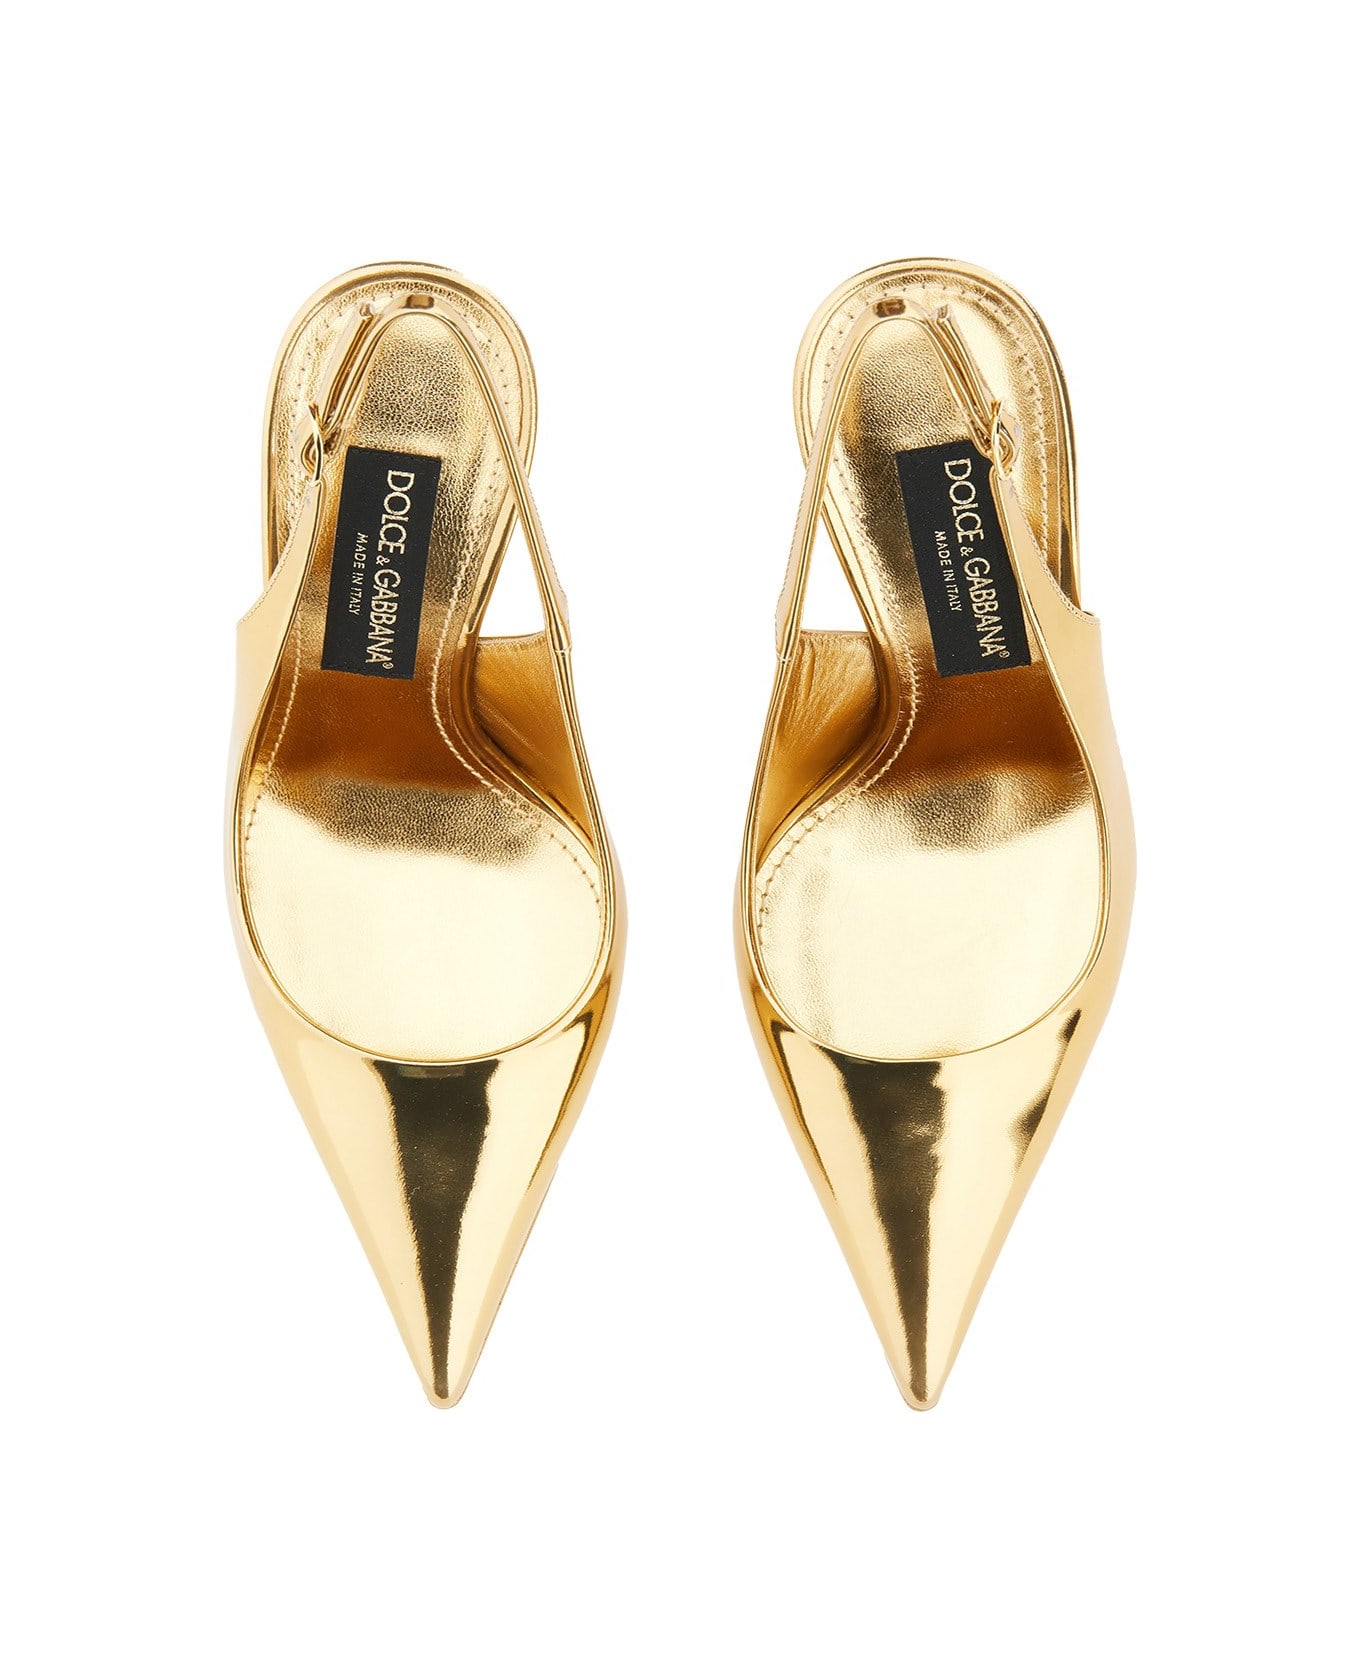 Dolce & Gabbana Leather Sling Back - Golden